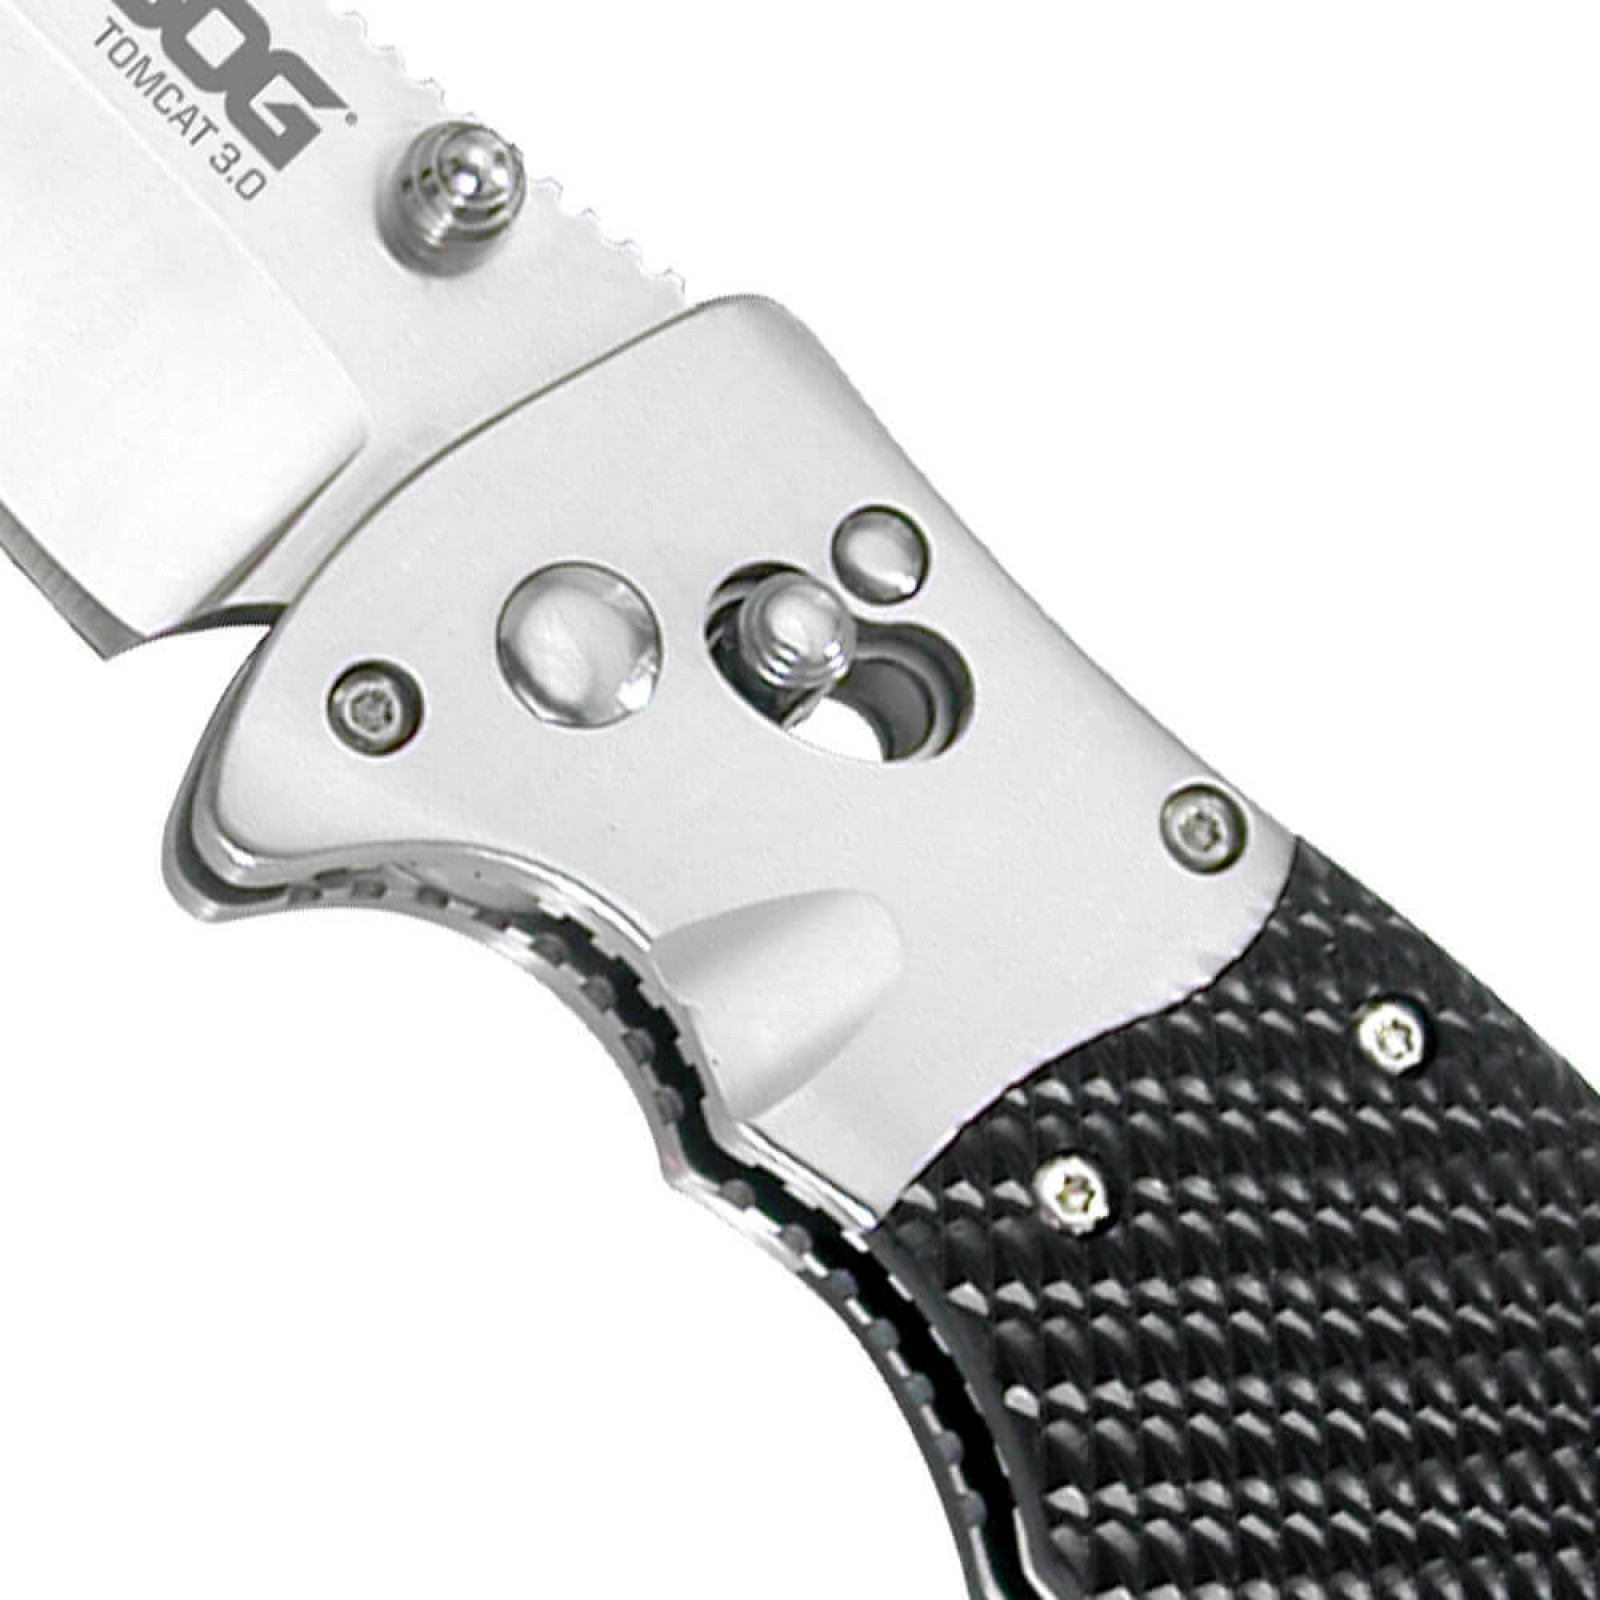 Складной нож Tomcat 3.0 - SOG S95, сталь VG-10, рукоять кратон - фото 3